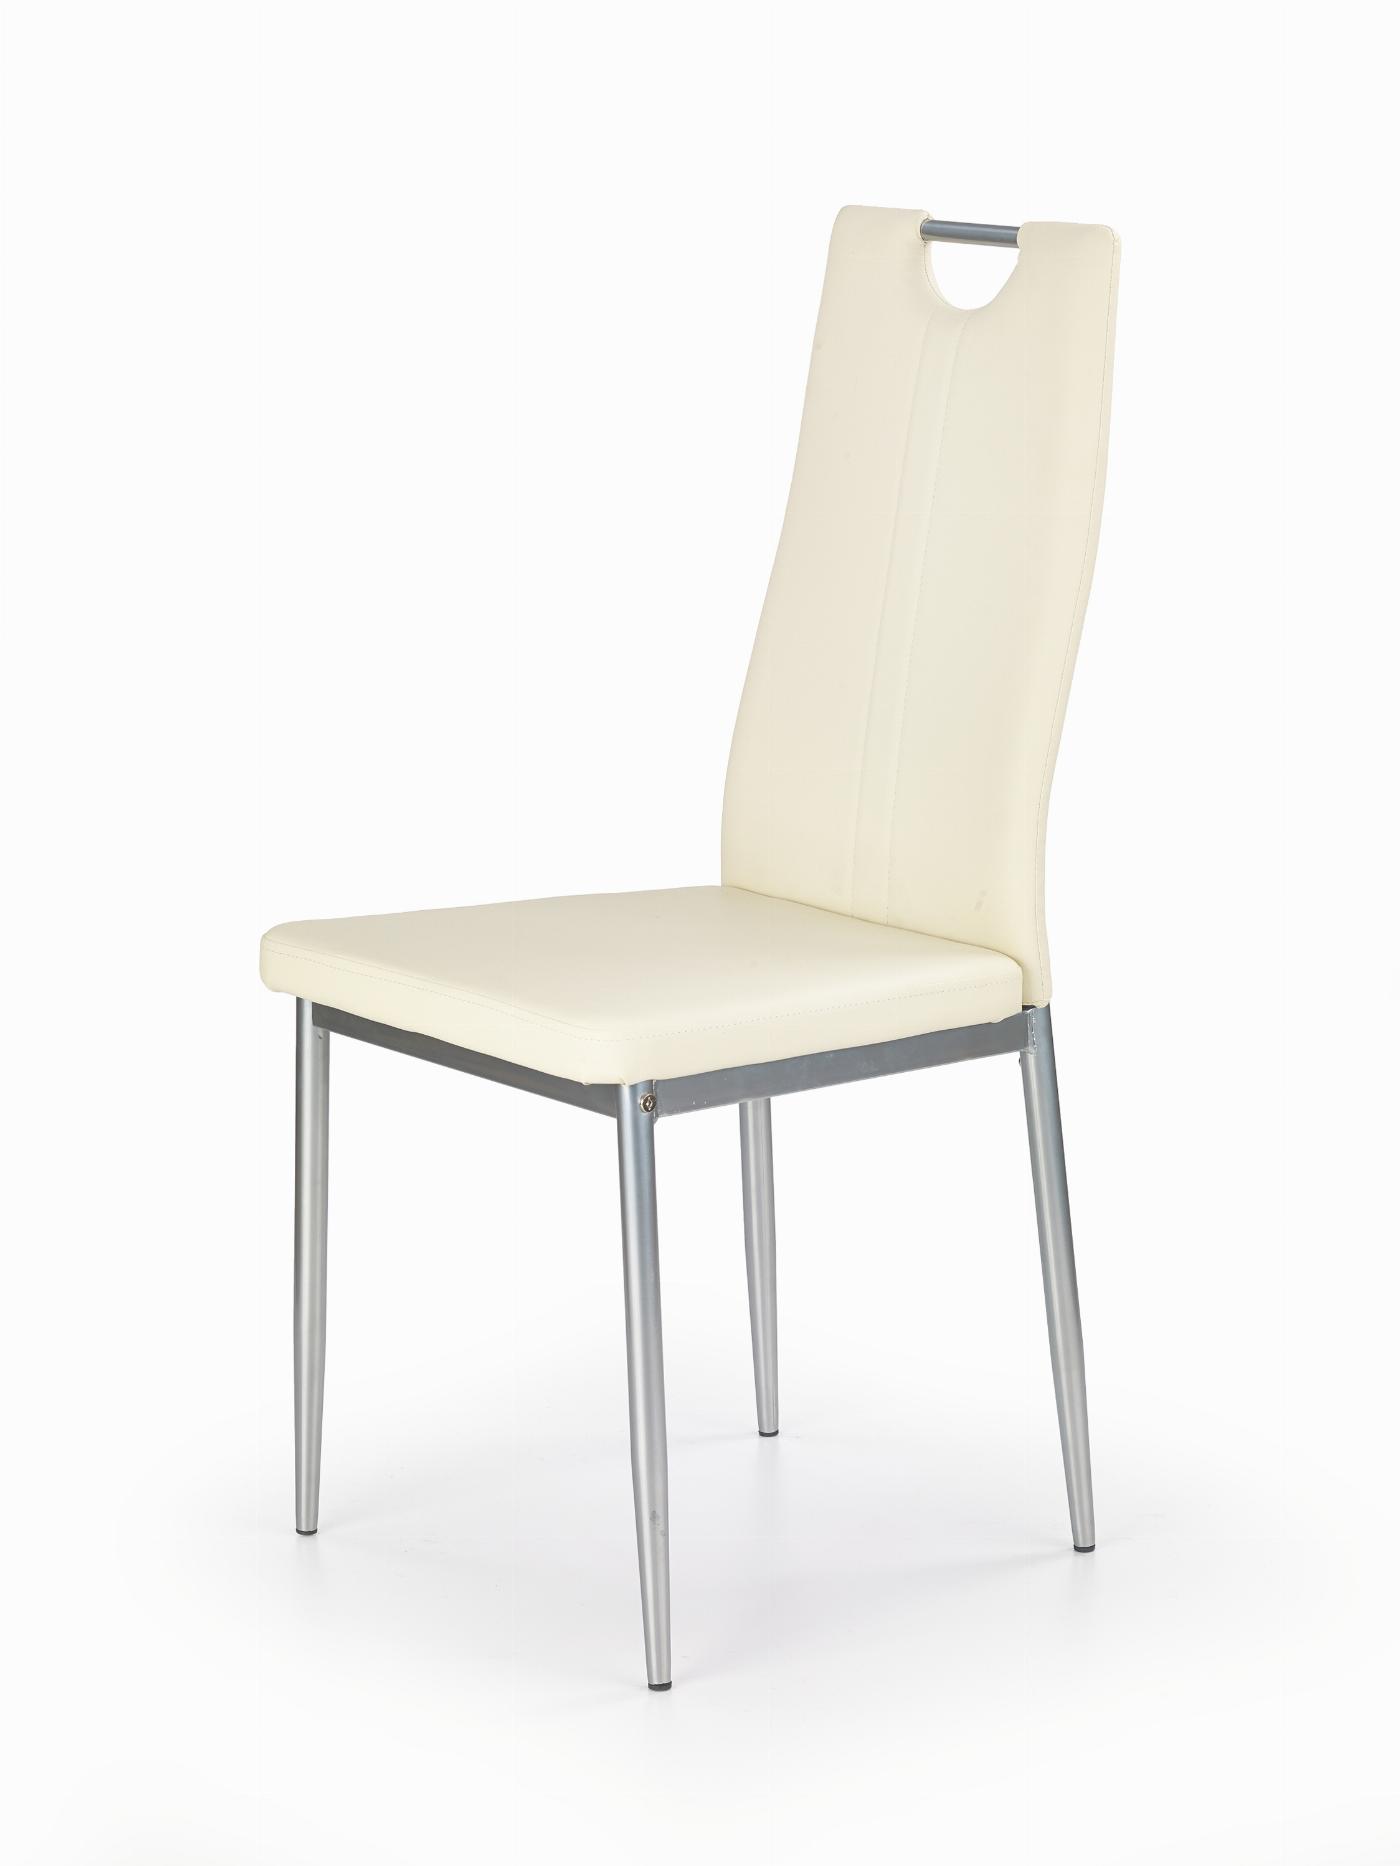 K202 krzesło kremowy (1p=4szt)